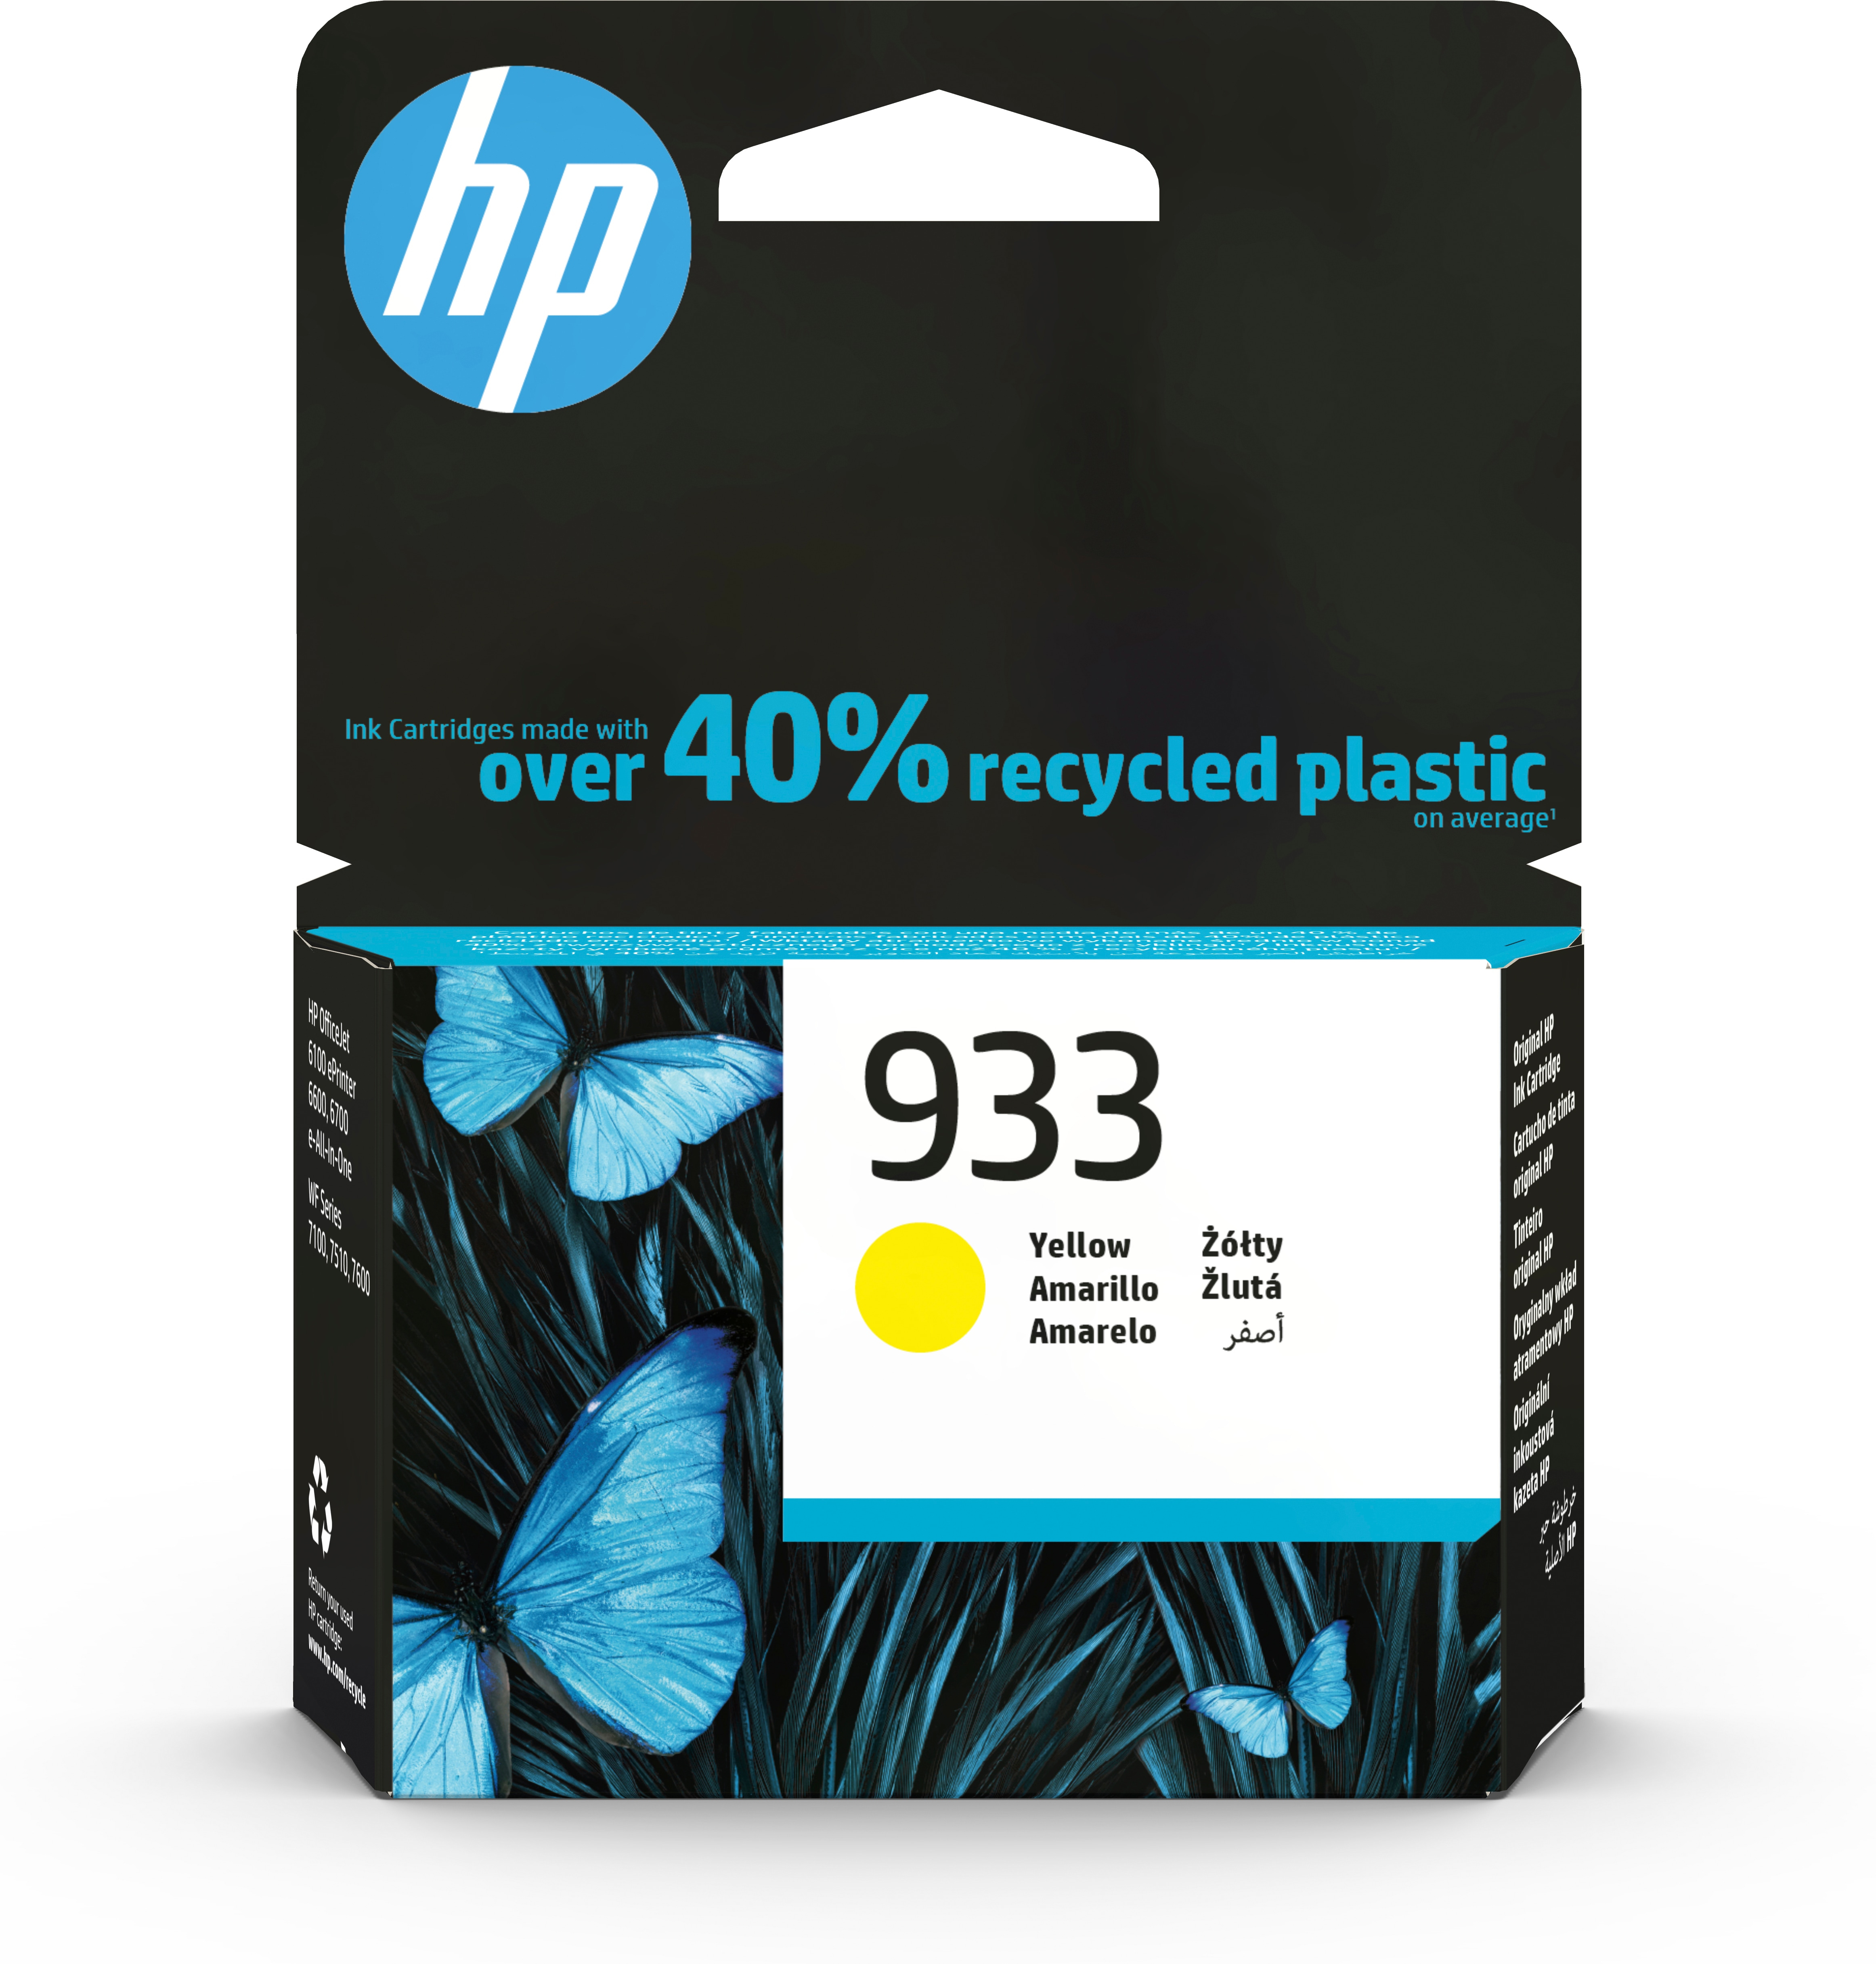 HP 933 Gelb Original Druckerpatrone - Standardertrag - Tinte auf Pigmentbasis - 3,5 ml - 330 Seiten - 1 Stück(e) - Einzelpackung